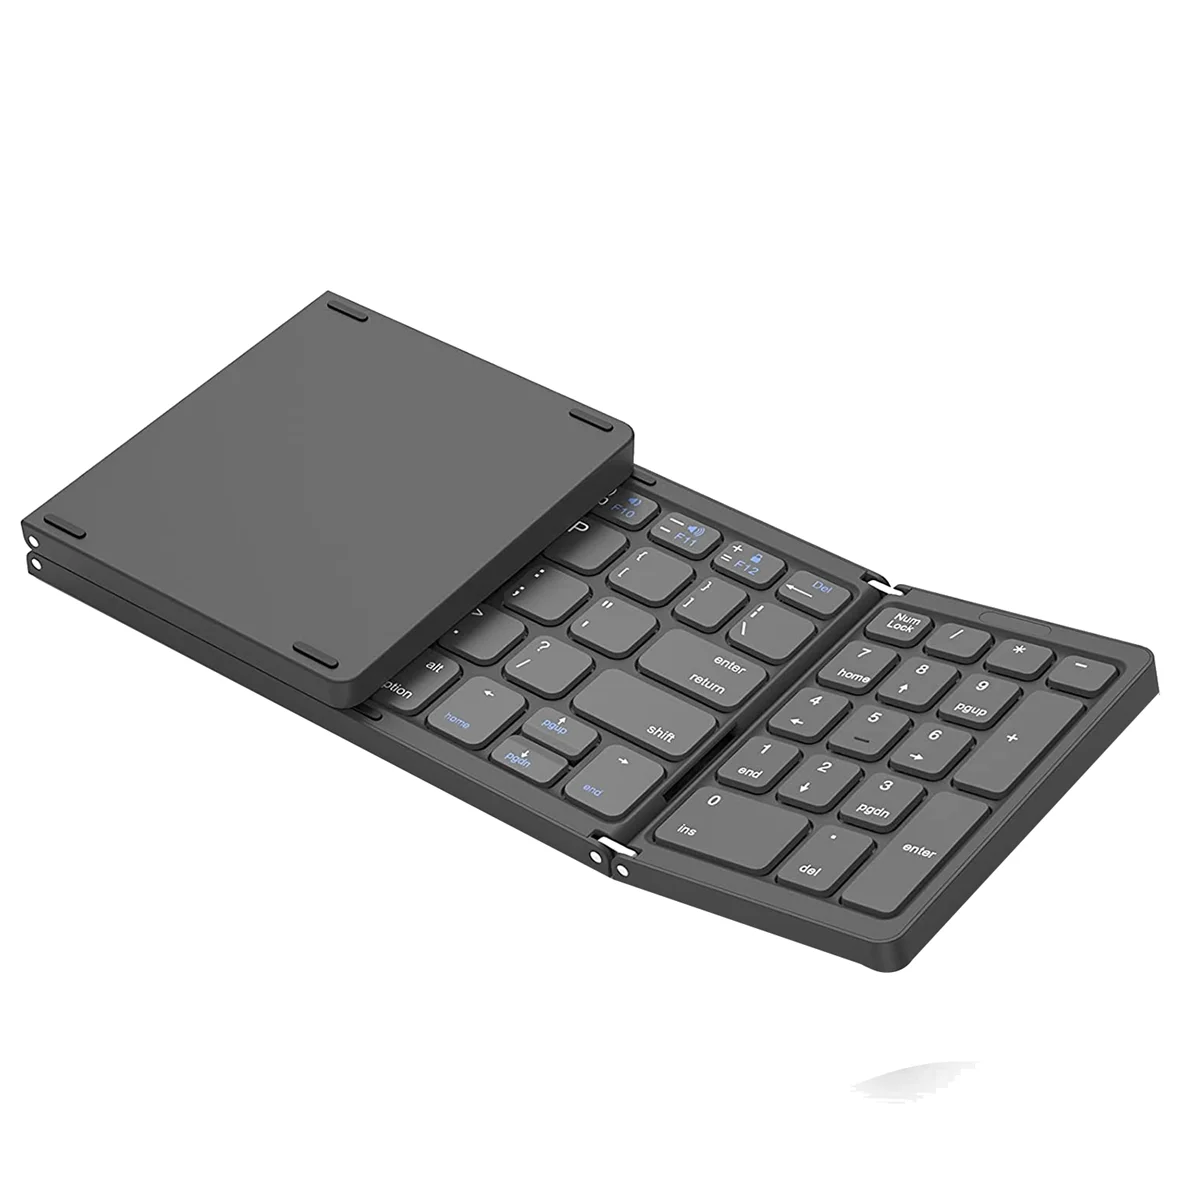 คีย์บอร์ดบลูทูธพับได้, แป้นพิมพ์ไร้สายชาร์จ USB สำหรับ iOS, Android, สมาร์ทโฟนแล็ปท็อป Windows PC-สีเทา